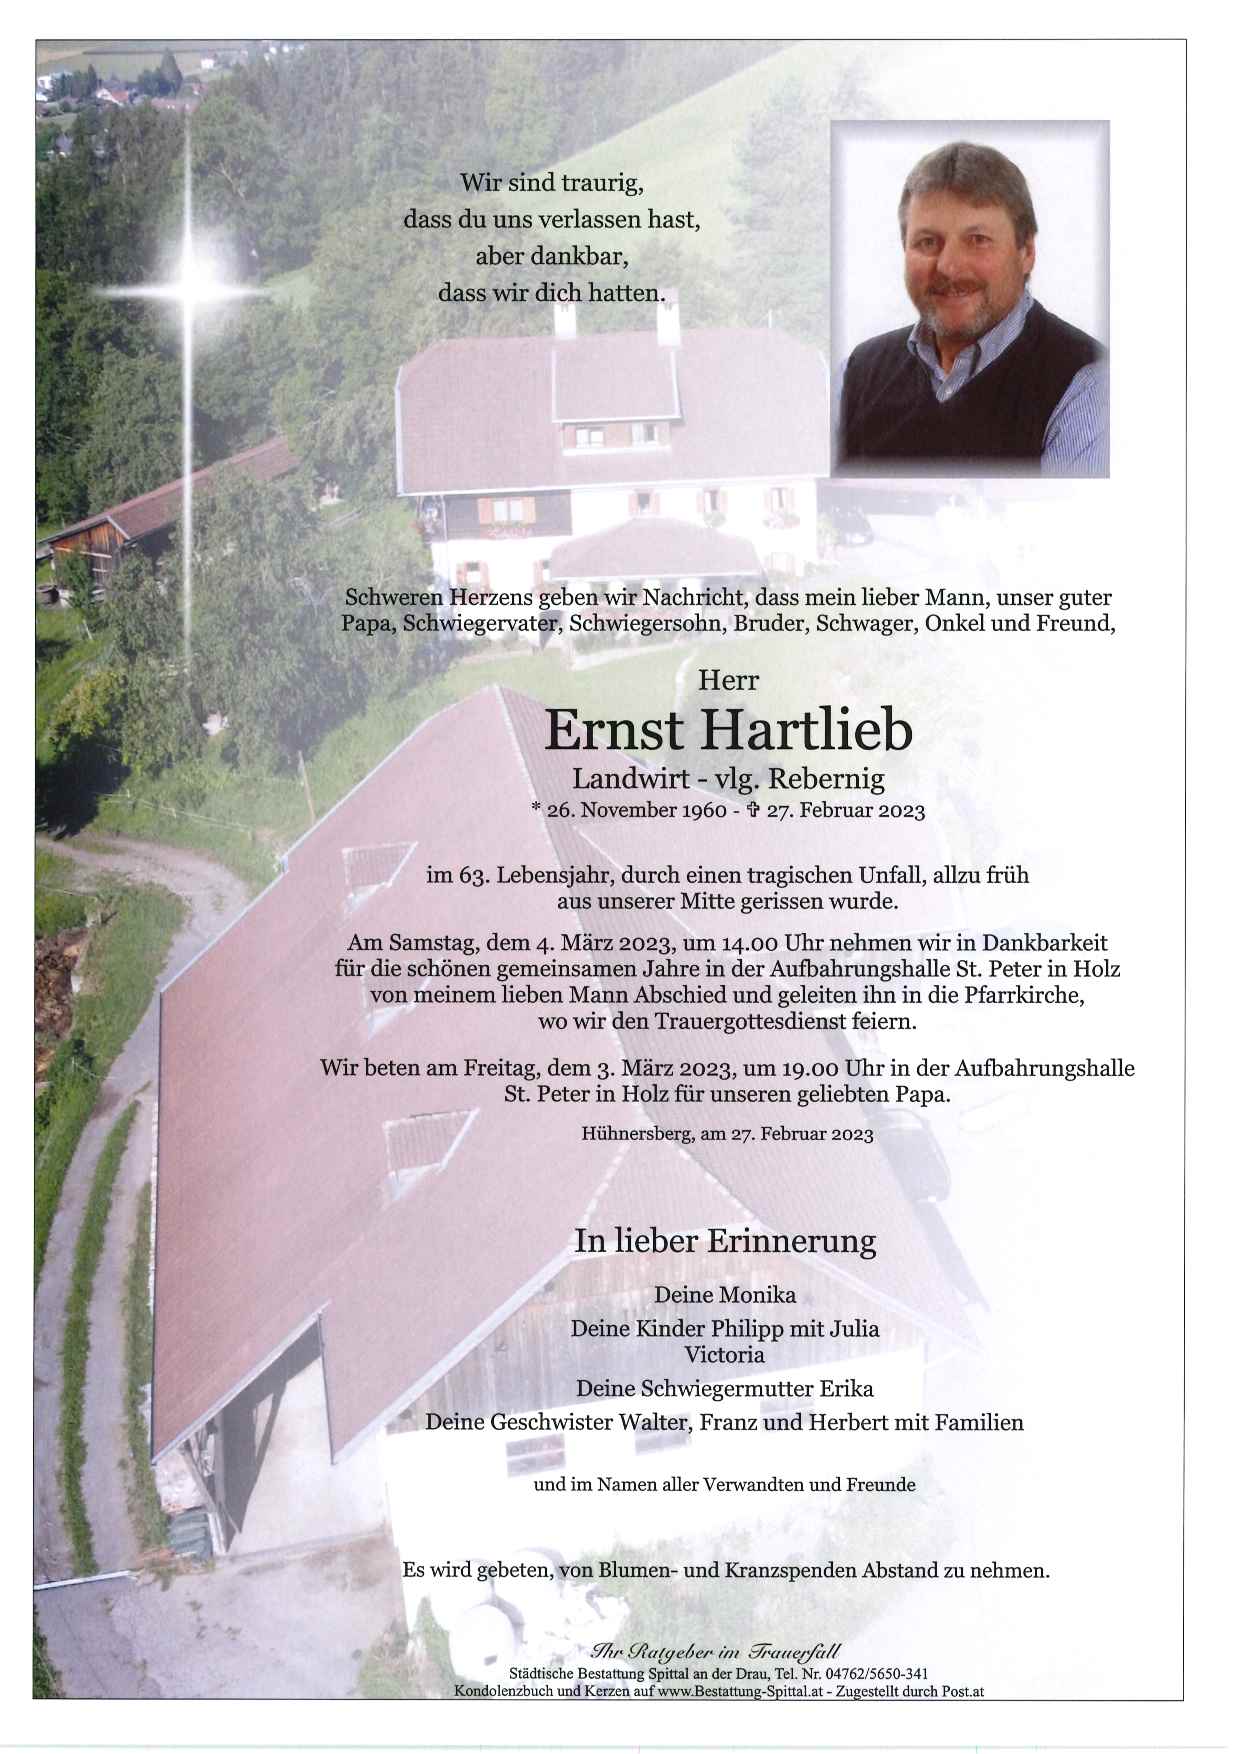 Ernst Hartlieb